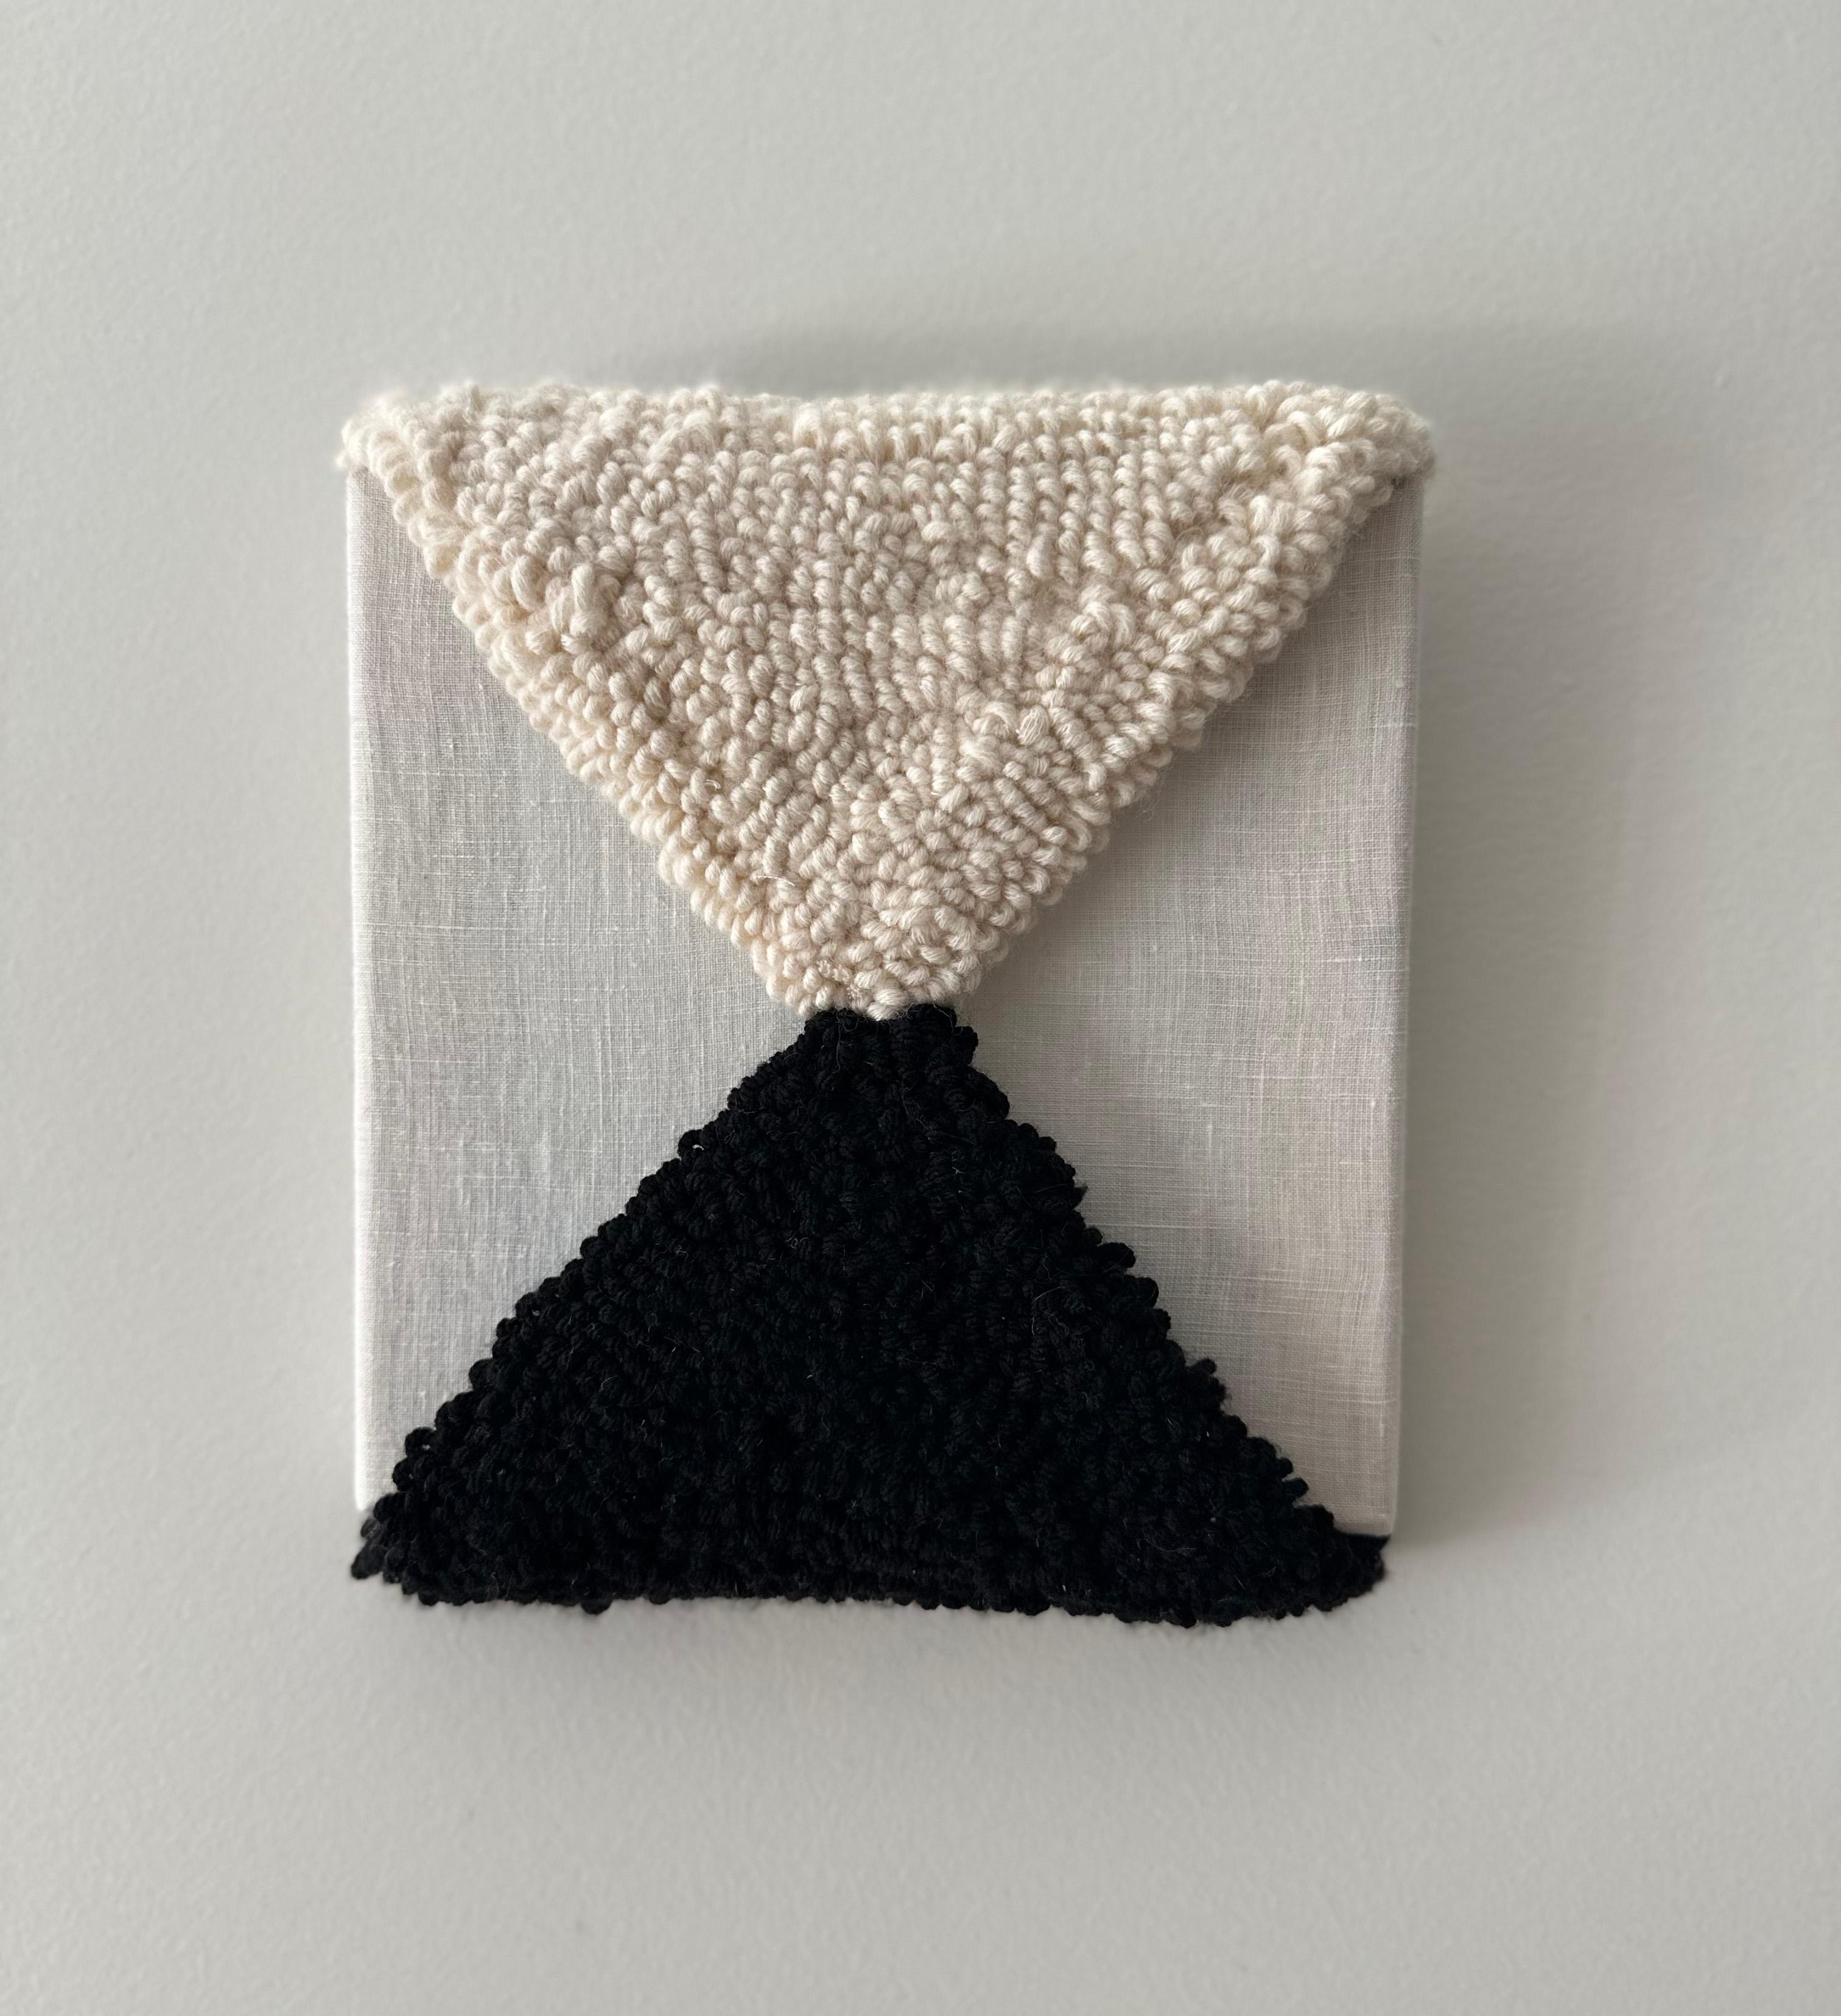 Ausgewogenheit, Textur, Textil, Muster, Schwarz und Weiß, neutrale Töne – Sculpture von Ana Maria Farina